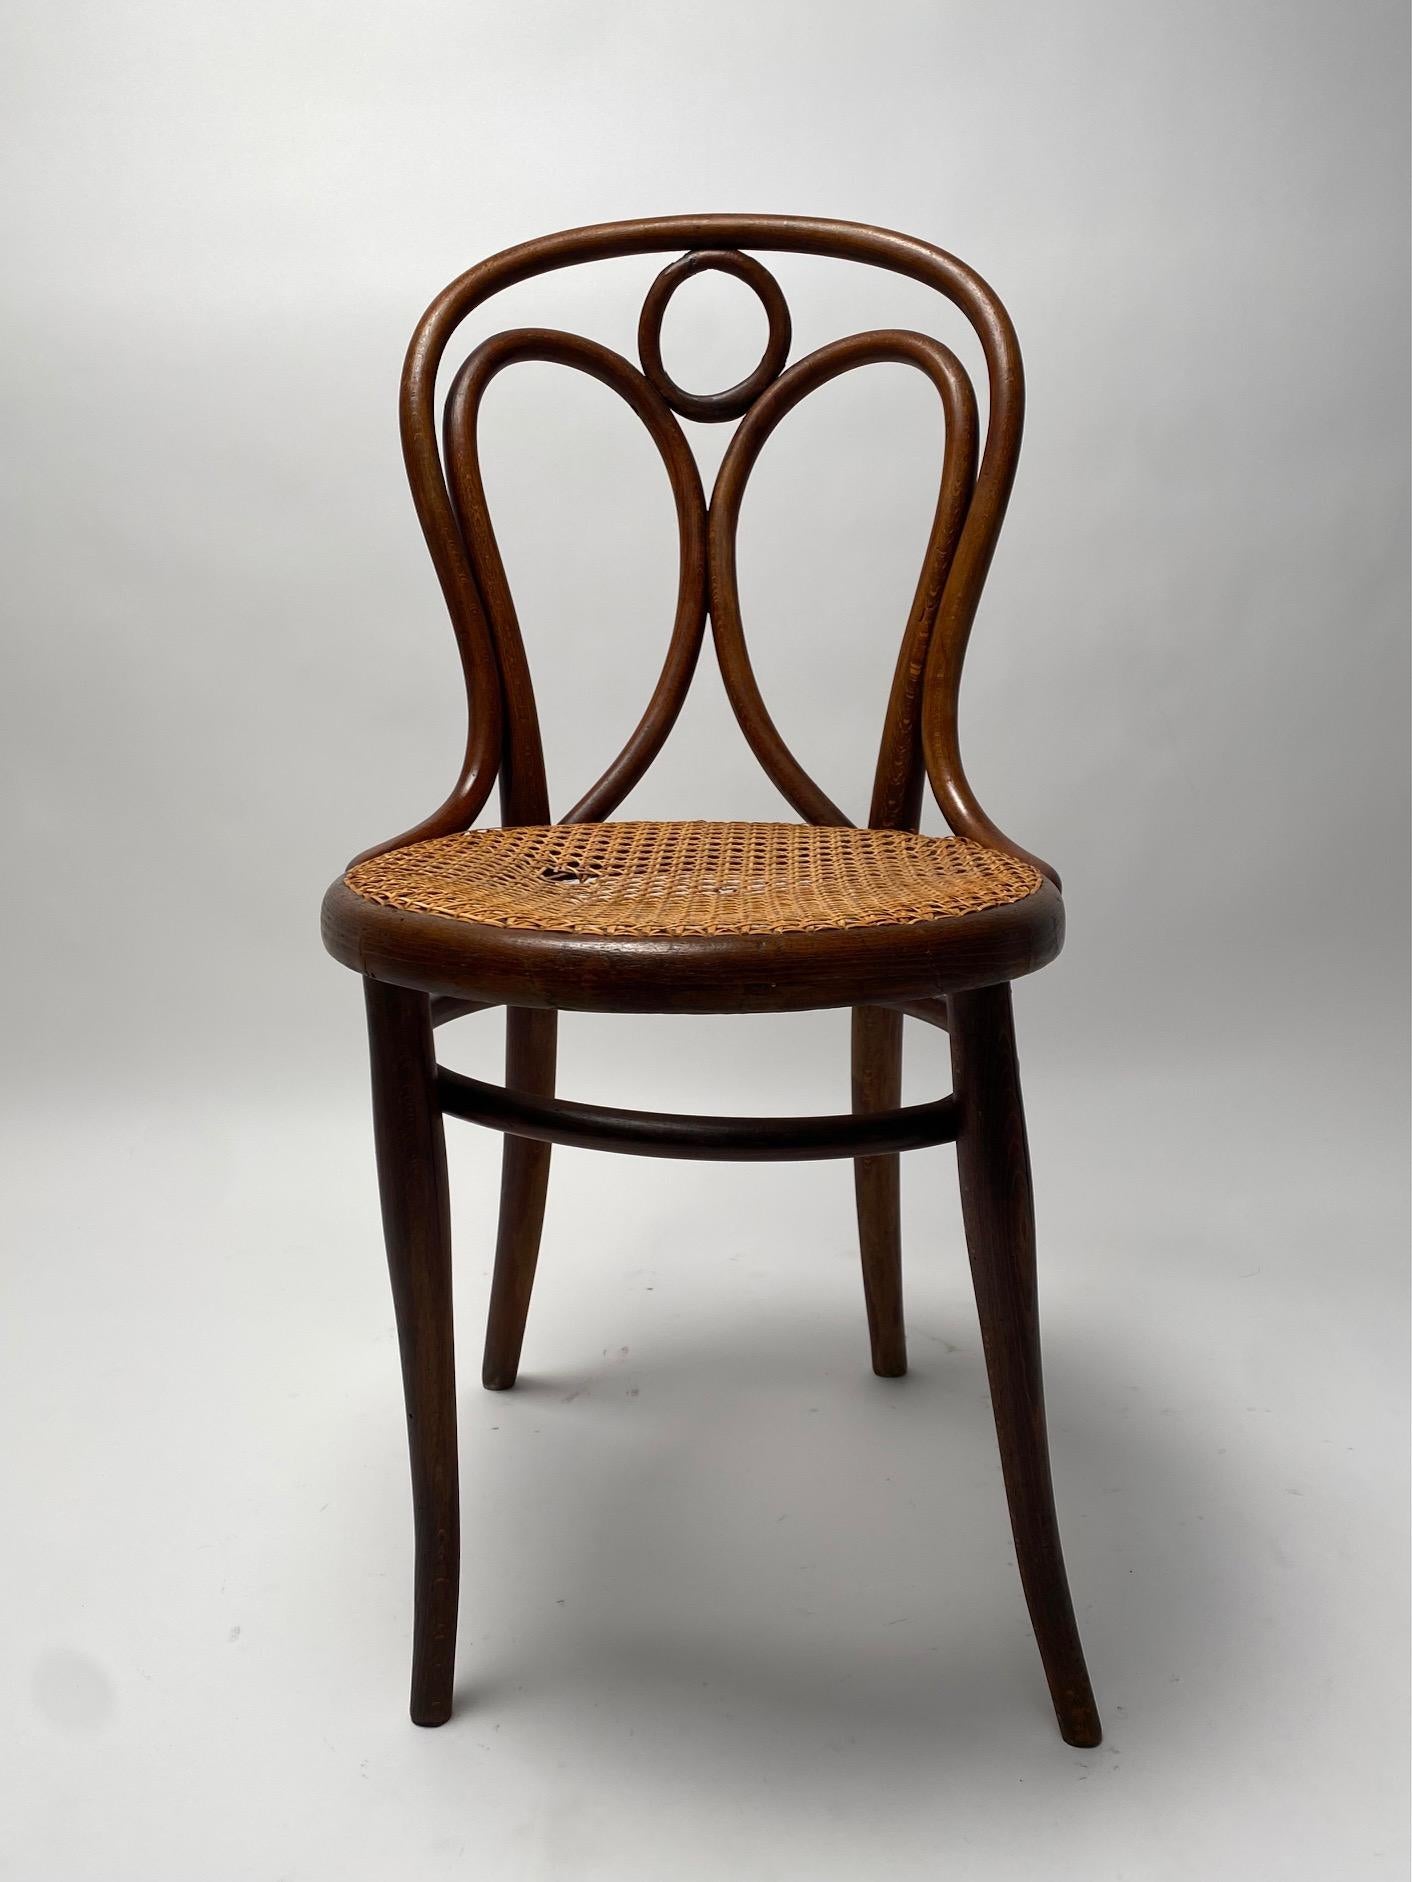 Satz von 4 Thonet Stühlen aus gebogener Buche, Österreich, Anfang 1900

Es ist ein klassisches, aber sehr elegantes Stuhlmodell, das mit der berühmten Technik des Biegens von Buche mit Wasserdampf hergestellt wird. Eine Ikone des Stils und der